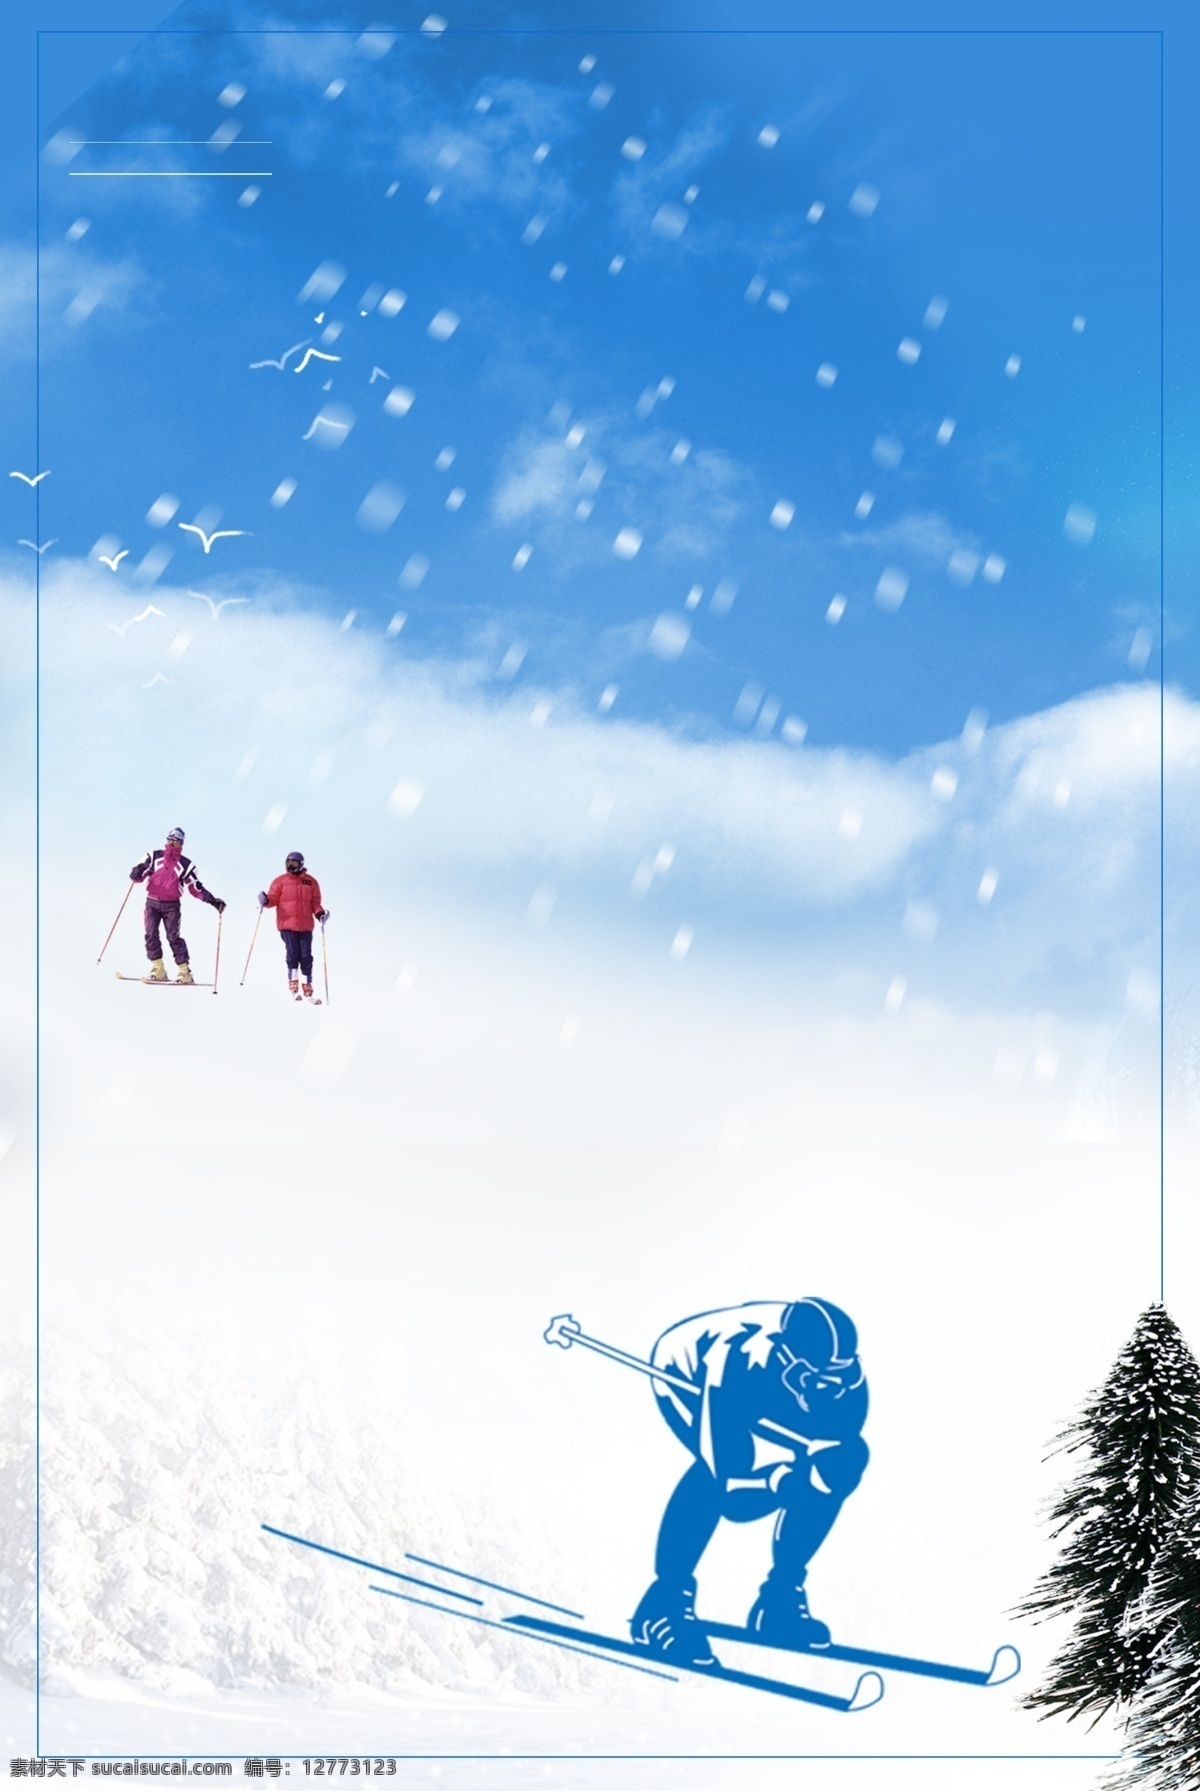 唯美 冬季 滑雪 背景 蓝色 广告背景 冬天 旅游 雪花 滑雪场 psd背景 冰雪背景 滑雪比赛 滑雪活动背景 冬季活动背景 滑雪素材